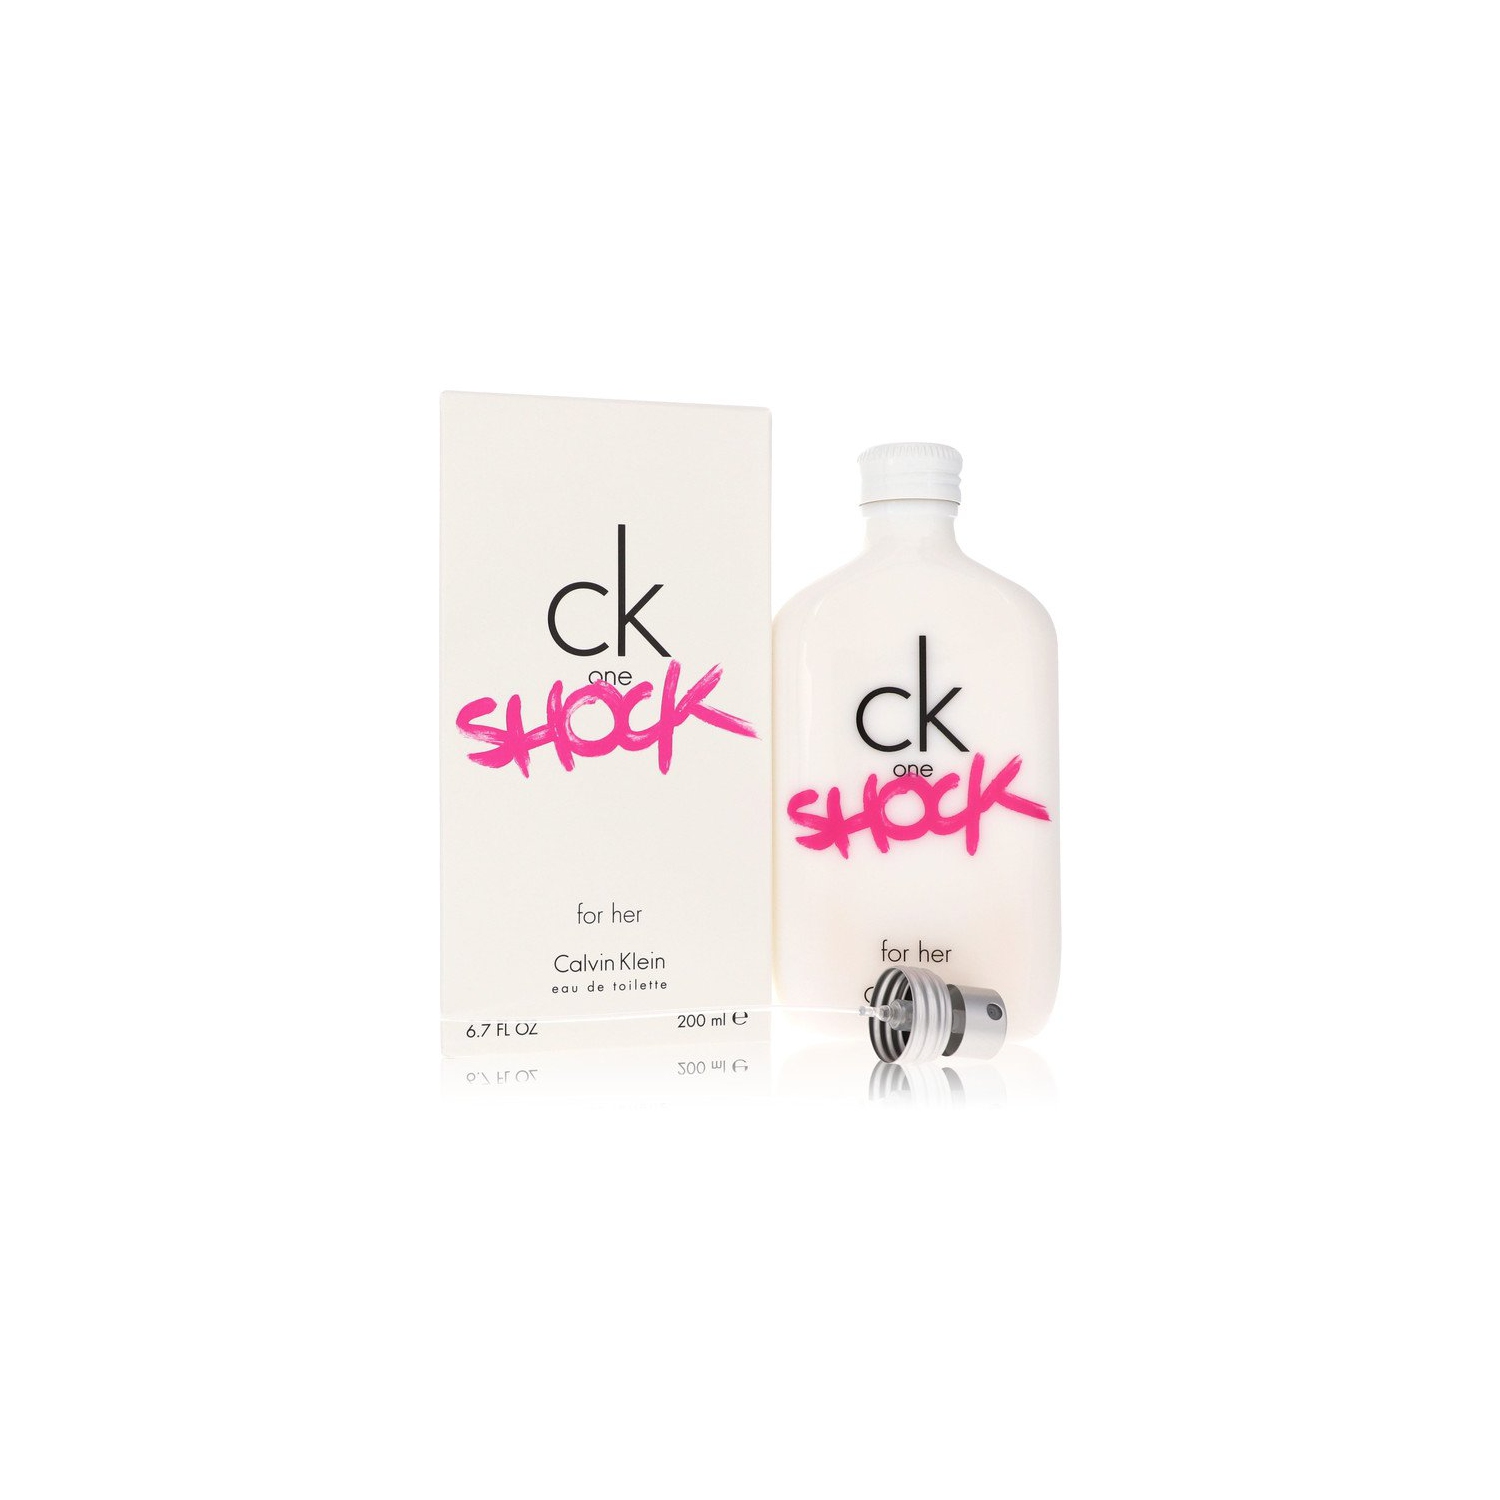 CK One Shock by Calvin Klein